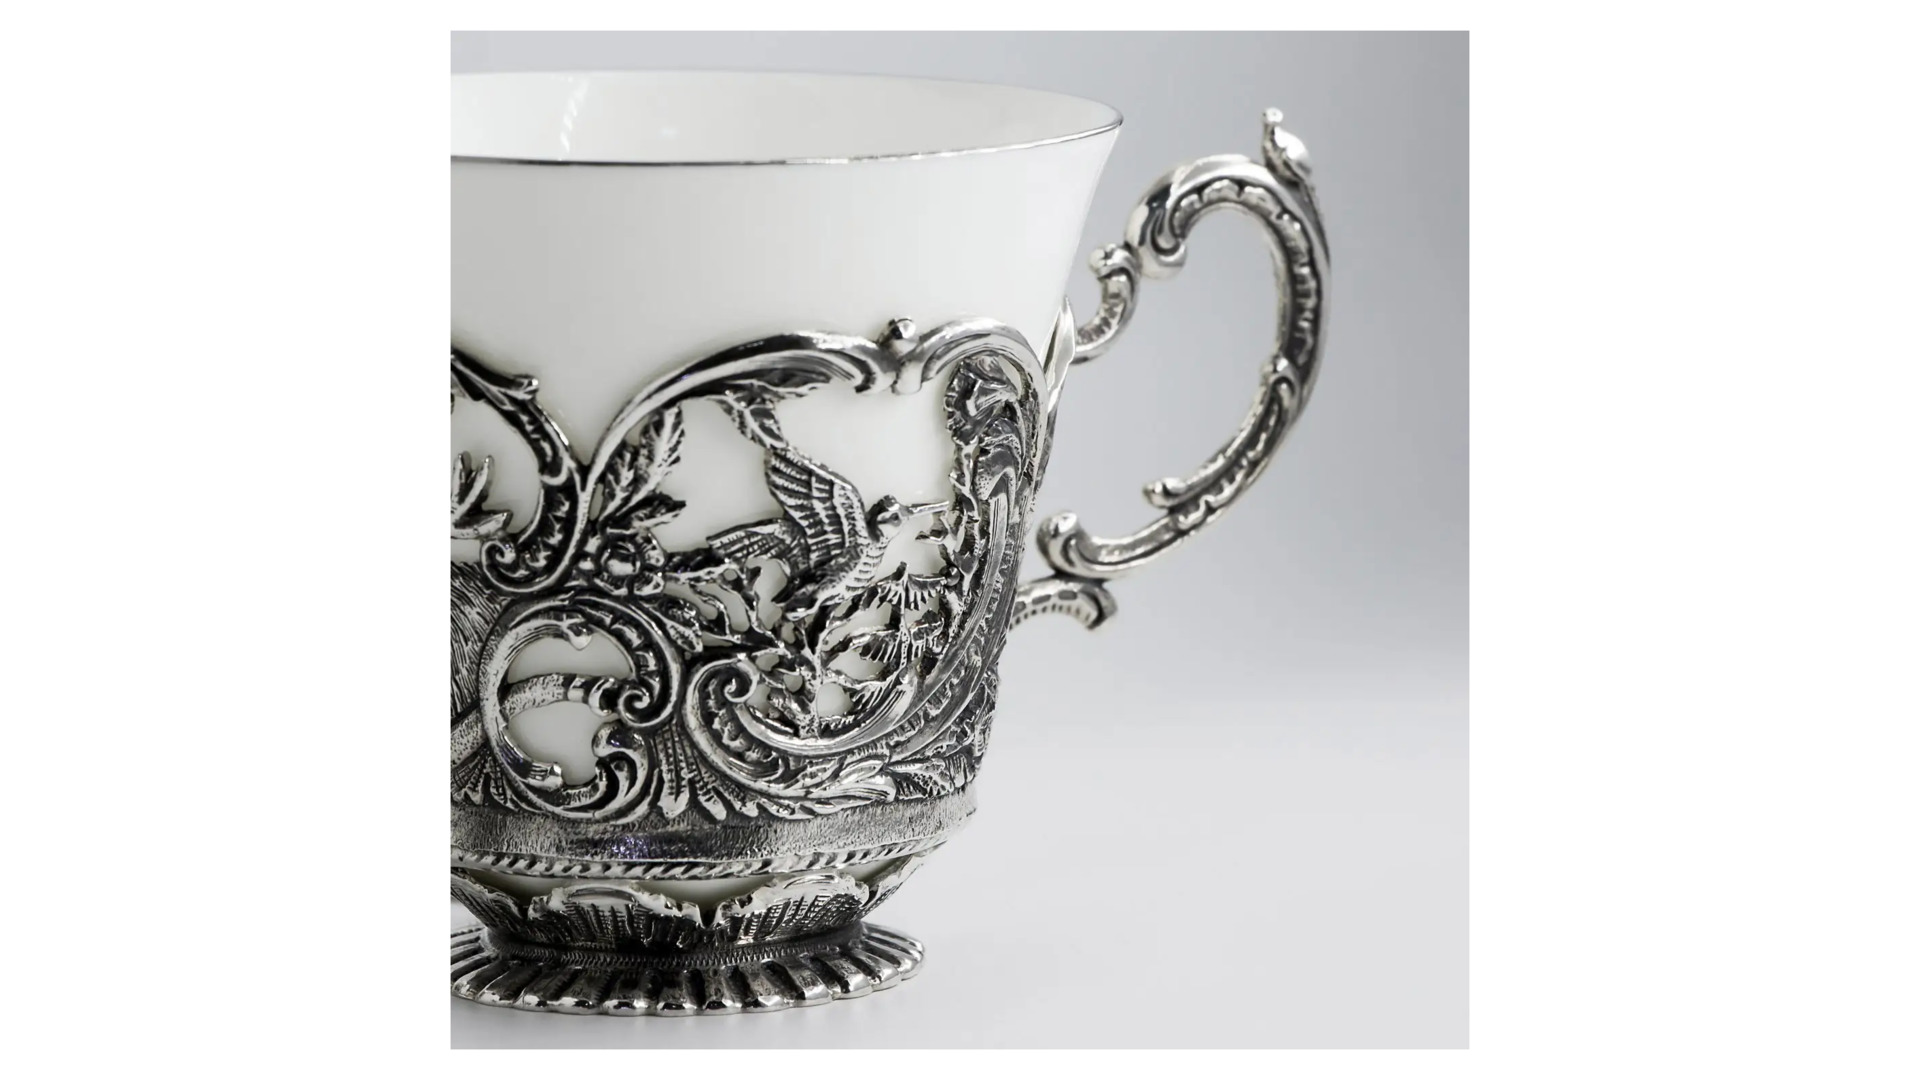 Набор чайный в футляре АргентА Королевская охота 348,69 г, 4 предметов, серебро 925